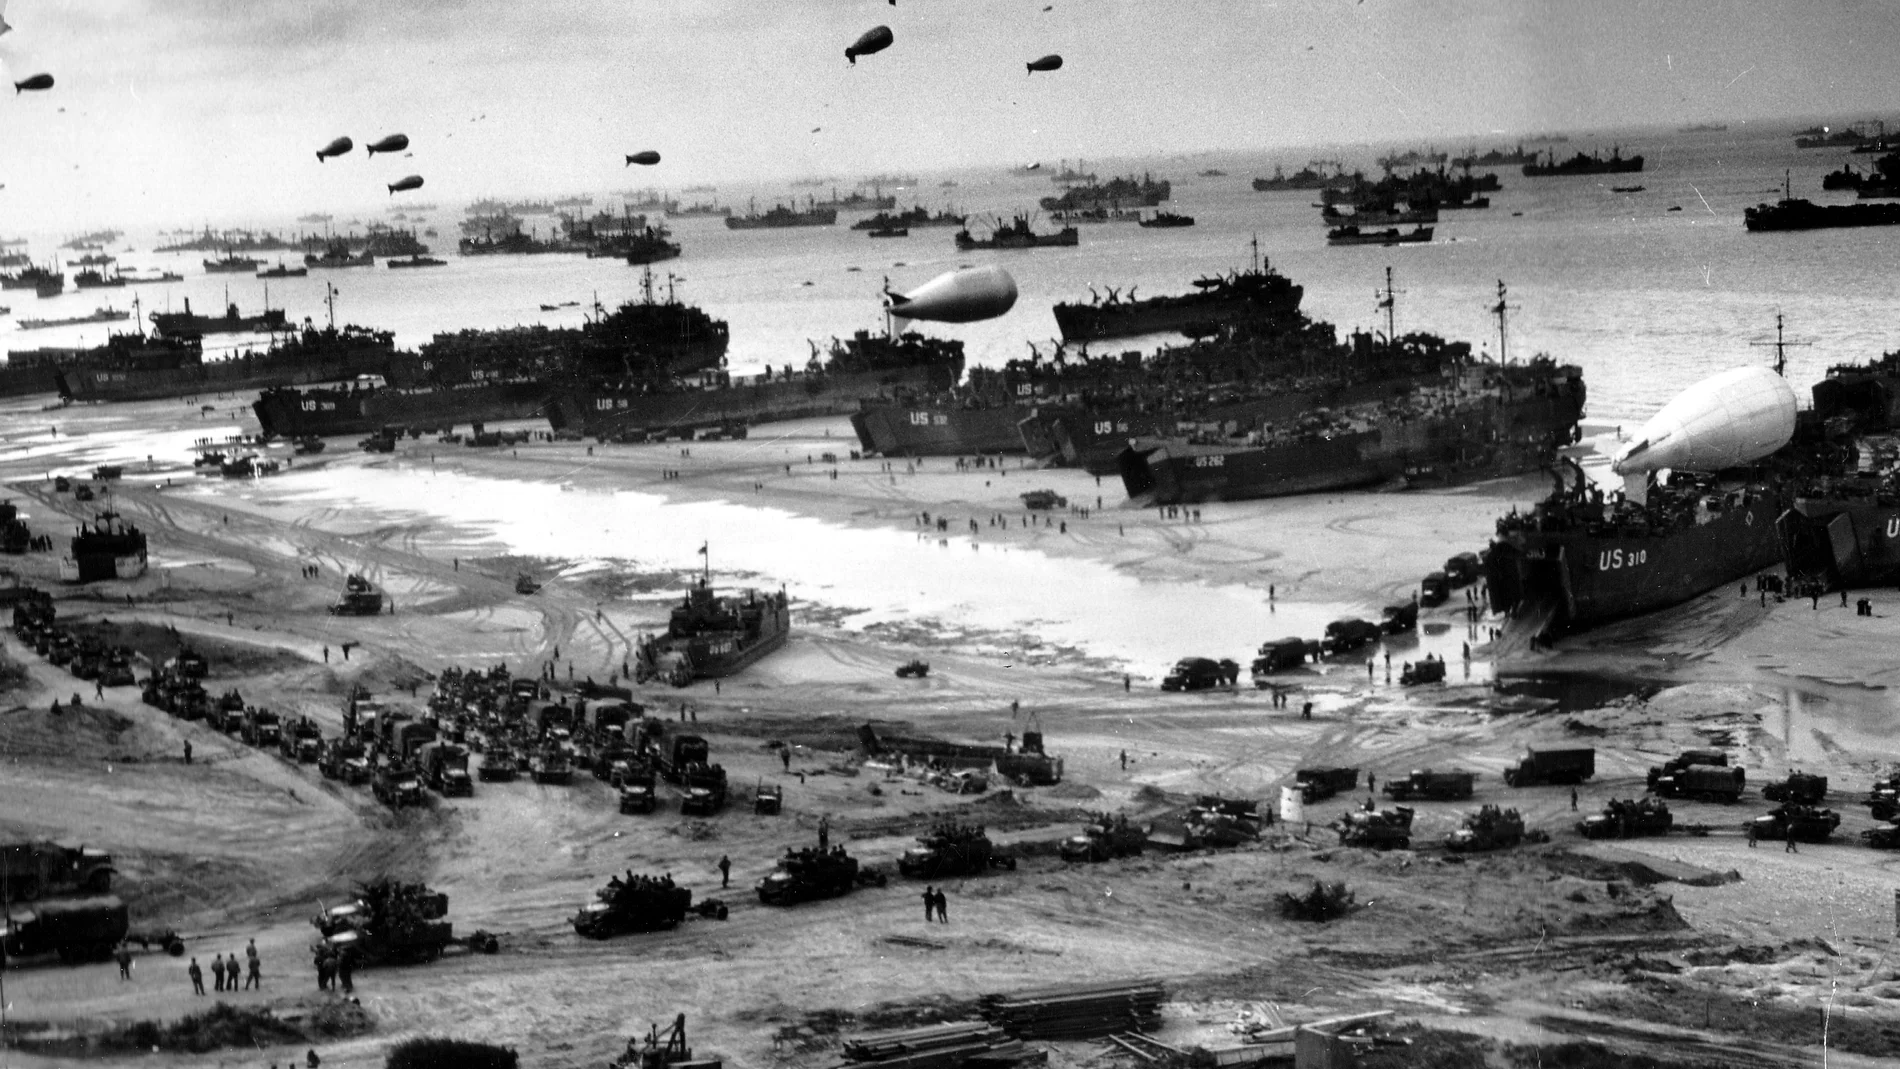 Fotografía facilitada por el ejército de los EE.UU. que muestra tropas estadounidenses a bordo de buques de guerra a su llegada a la playa durante el desembarco de Normandía (Francia) el 6 de junio de 1944. 